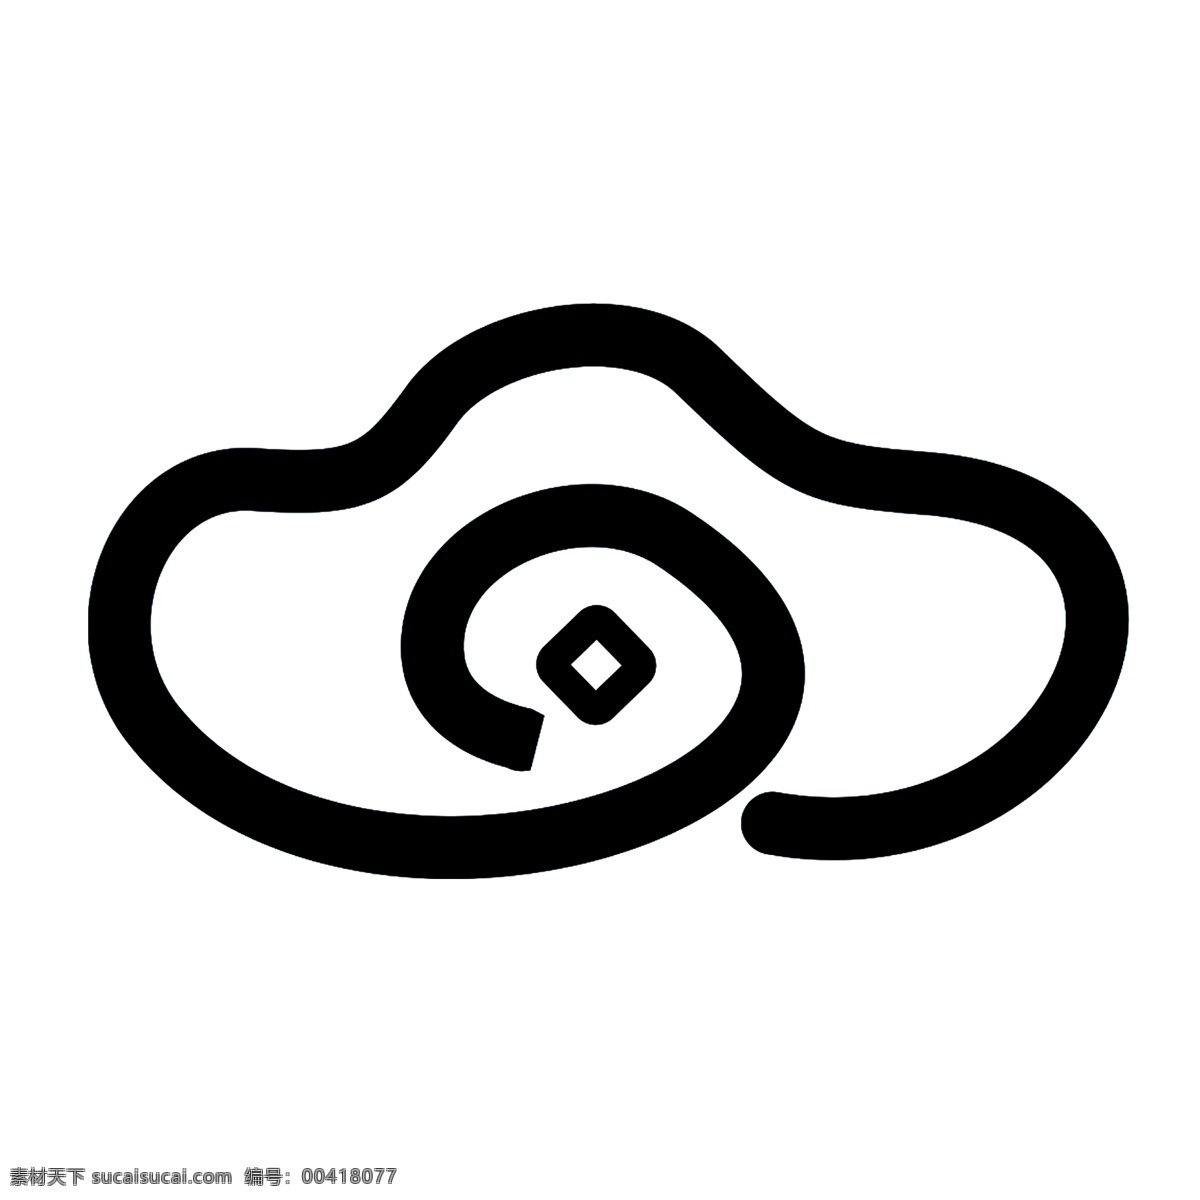 云端支付 软件 艺术字 图标 宣传用途 名称 云支付